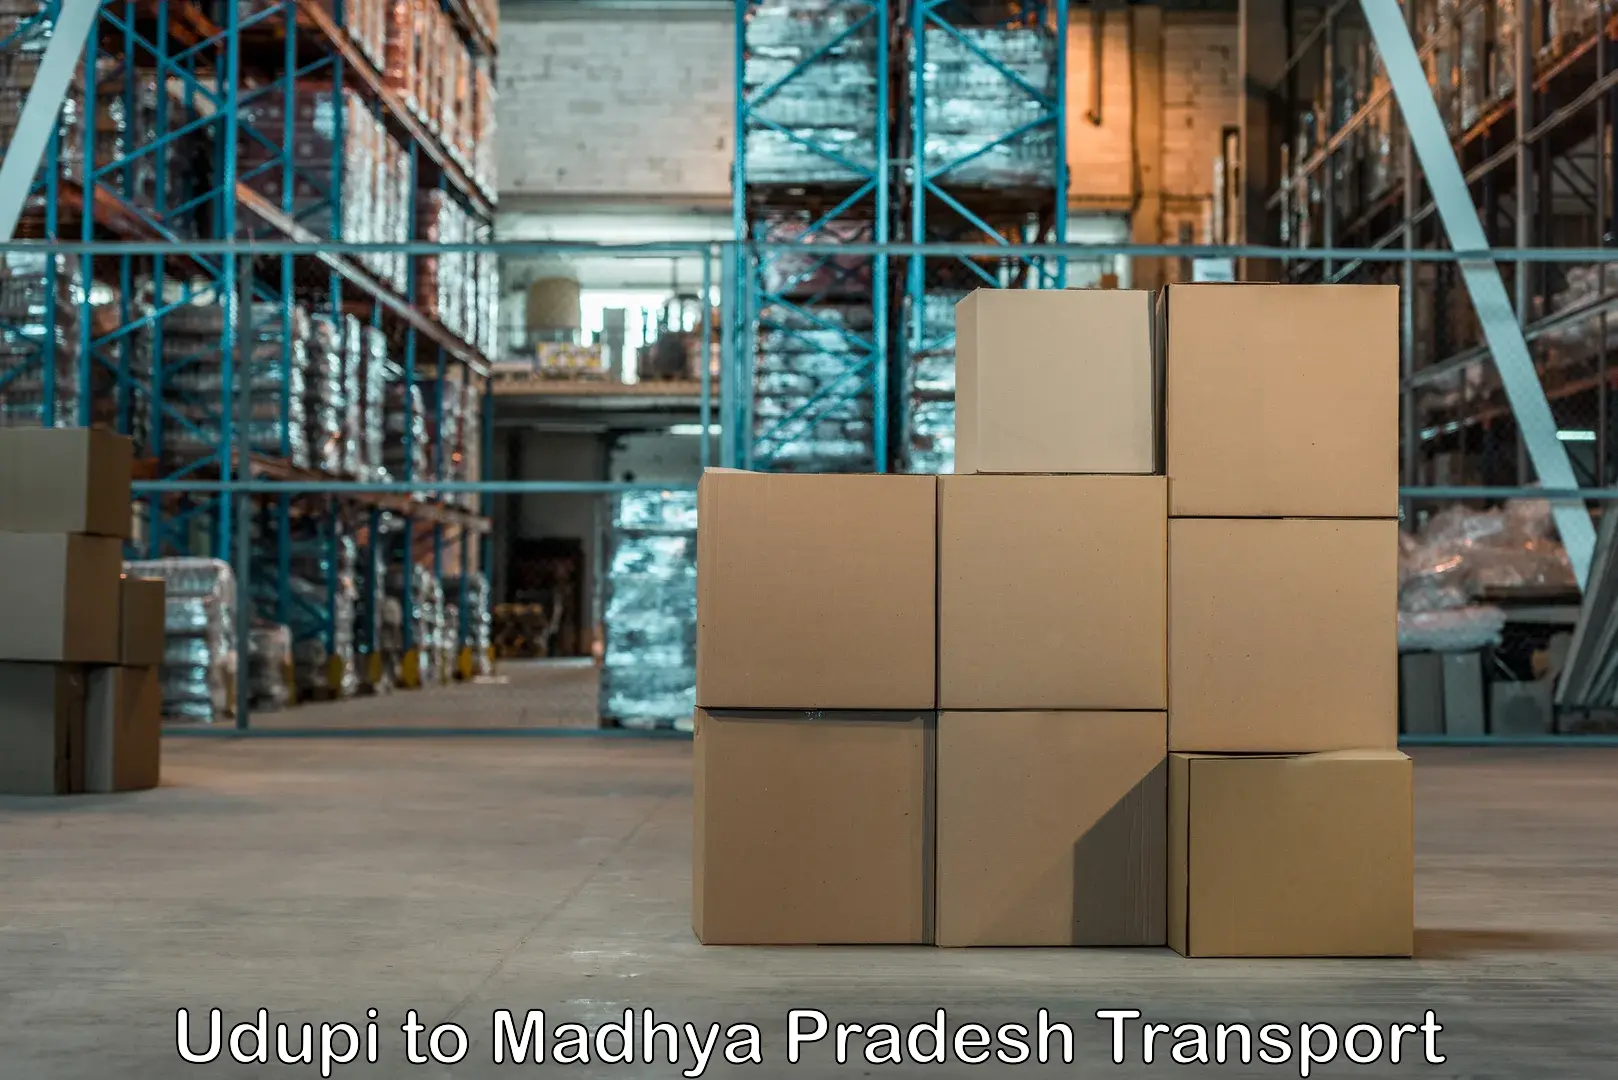 Shipping partner Udupi to Shajapur